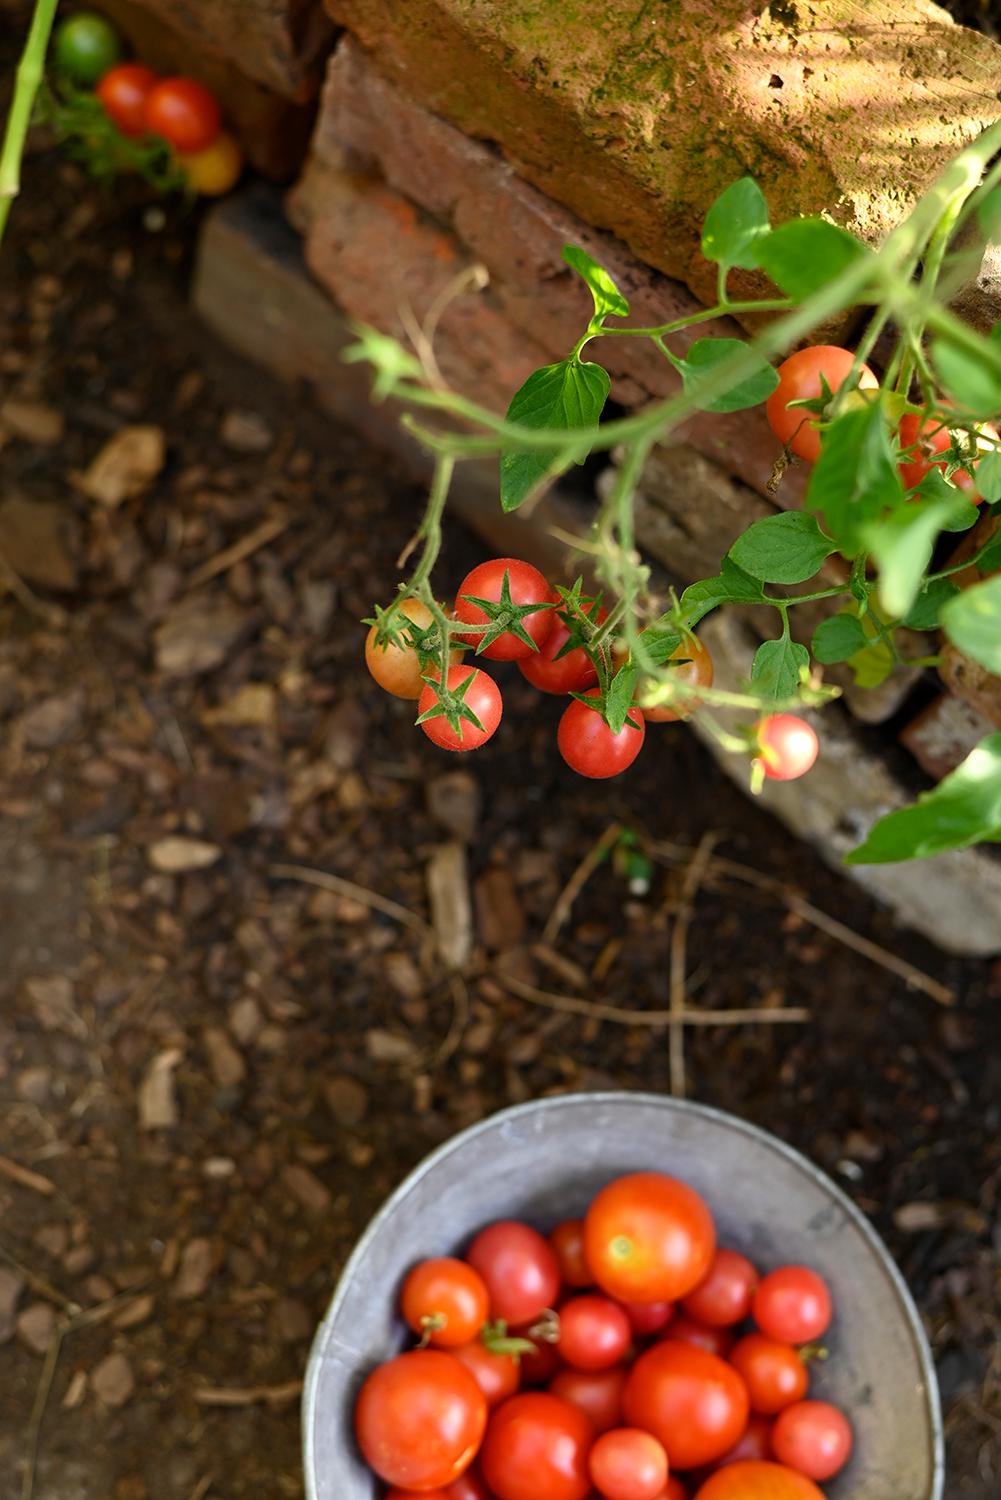 eine erfolgreiche Ernte...

#Tomaten #garten #Gewächshaus # selbstversorger #summerfeeling